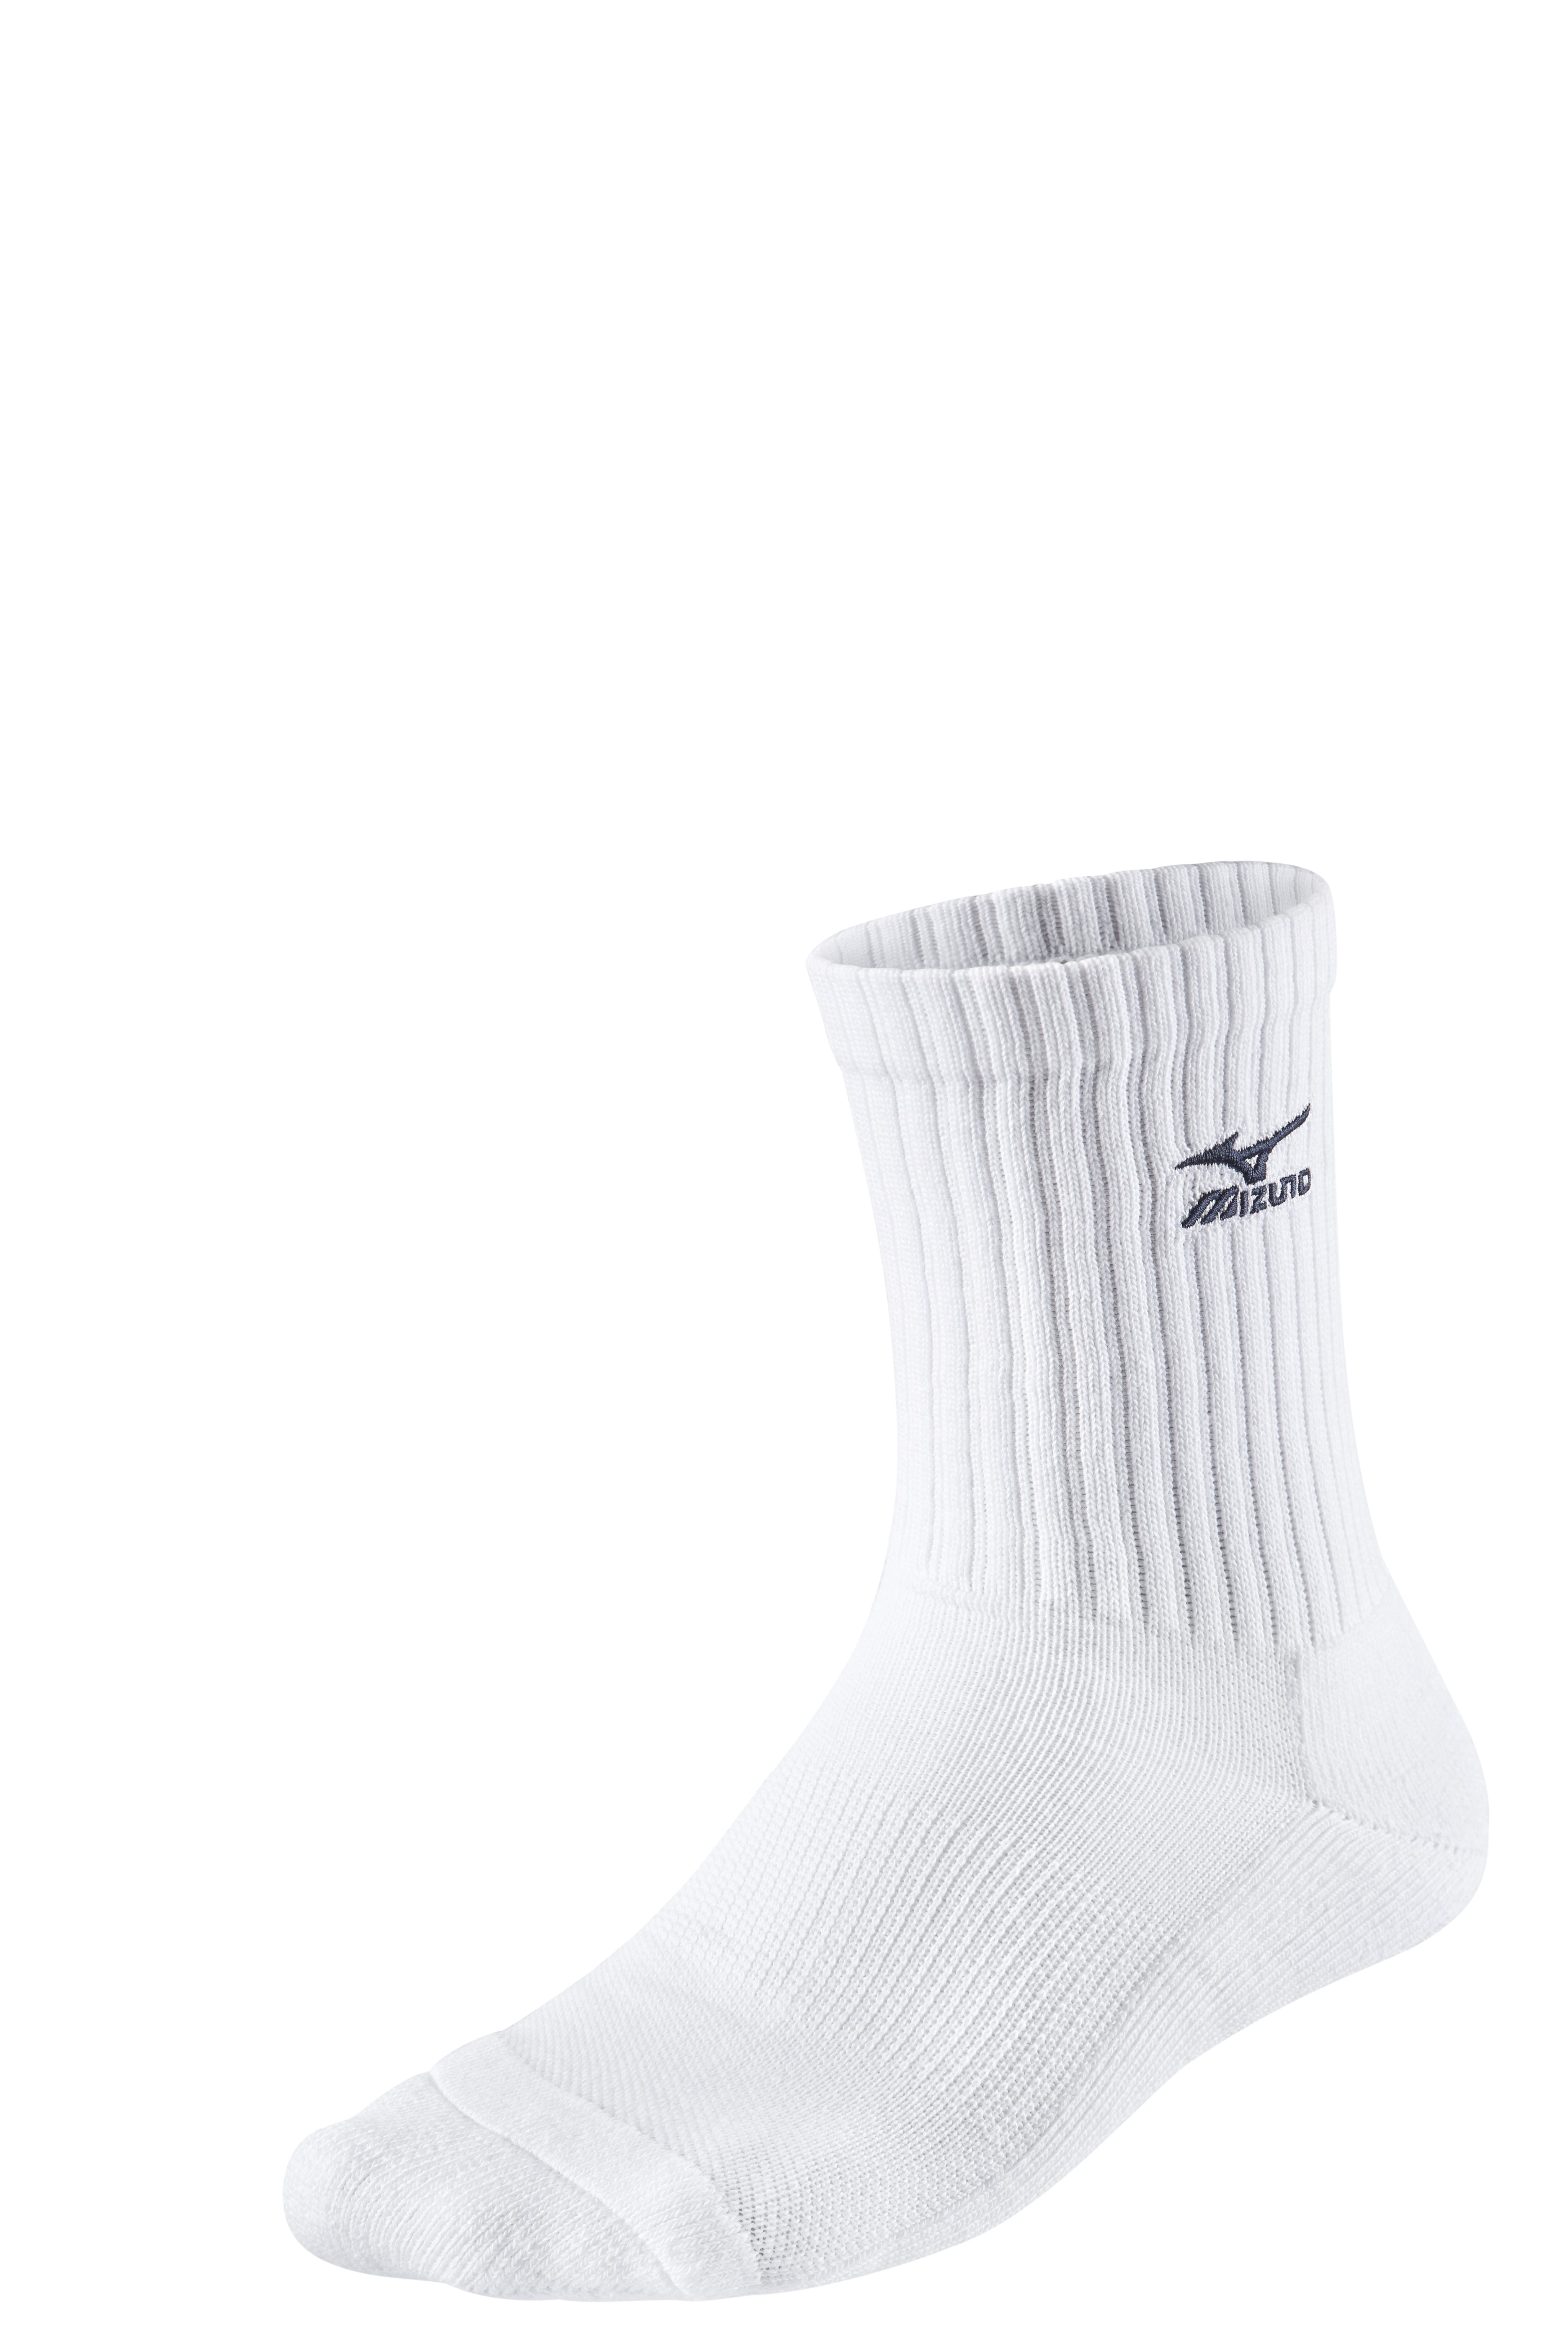 Mizuno Volley Socks Medium 67UU71571 S